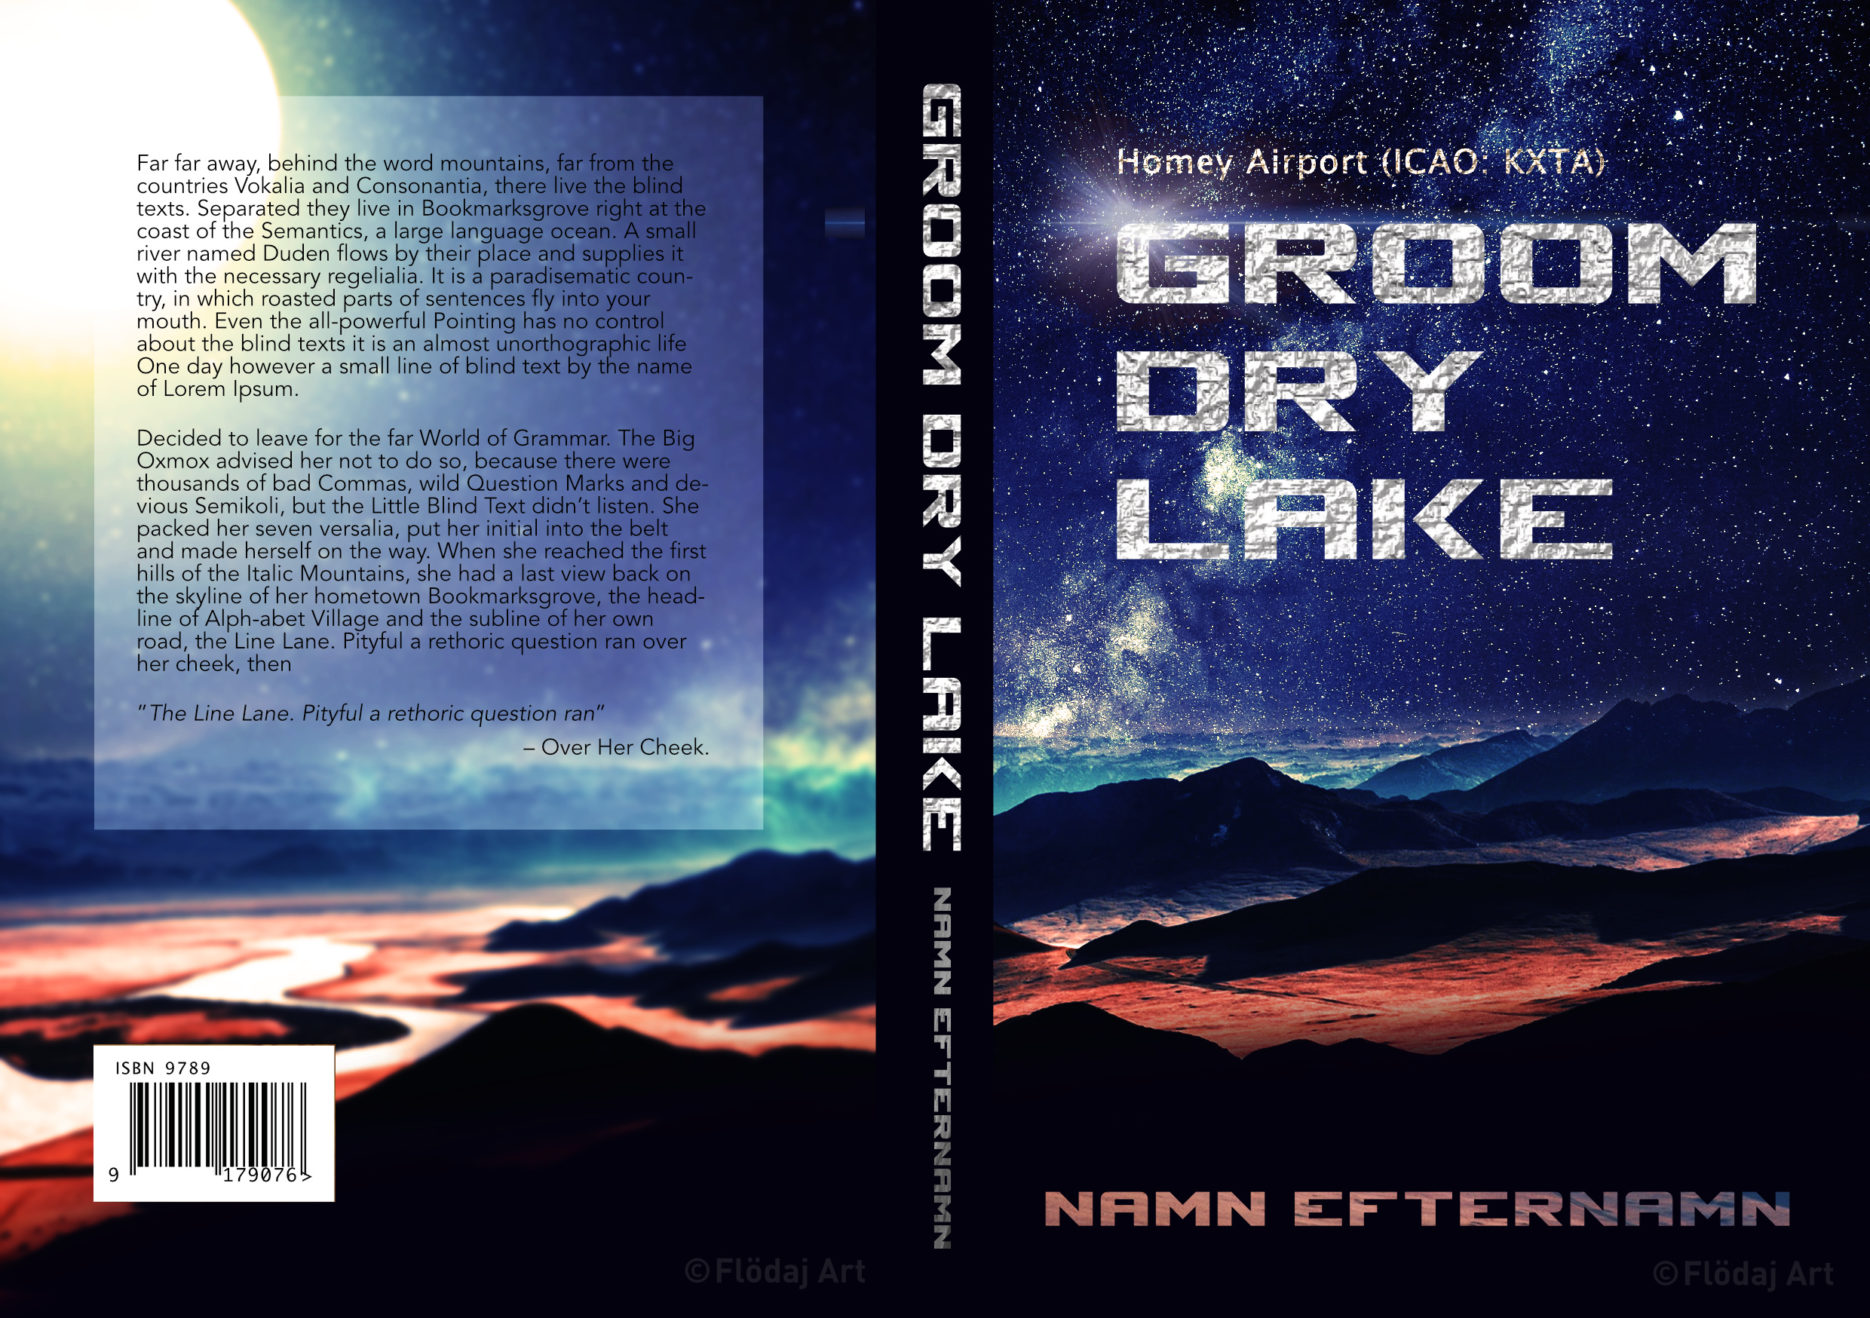 Bokomslag till tryckt bok med bild på mark på en annan, rödaktig planet. Mycket stjärnor ger ett intryck att vara ett rymdäventyr. Titel ”Groom Lake”, av Flödaj art.jpg